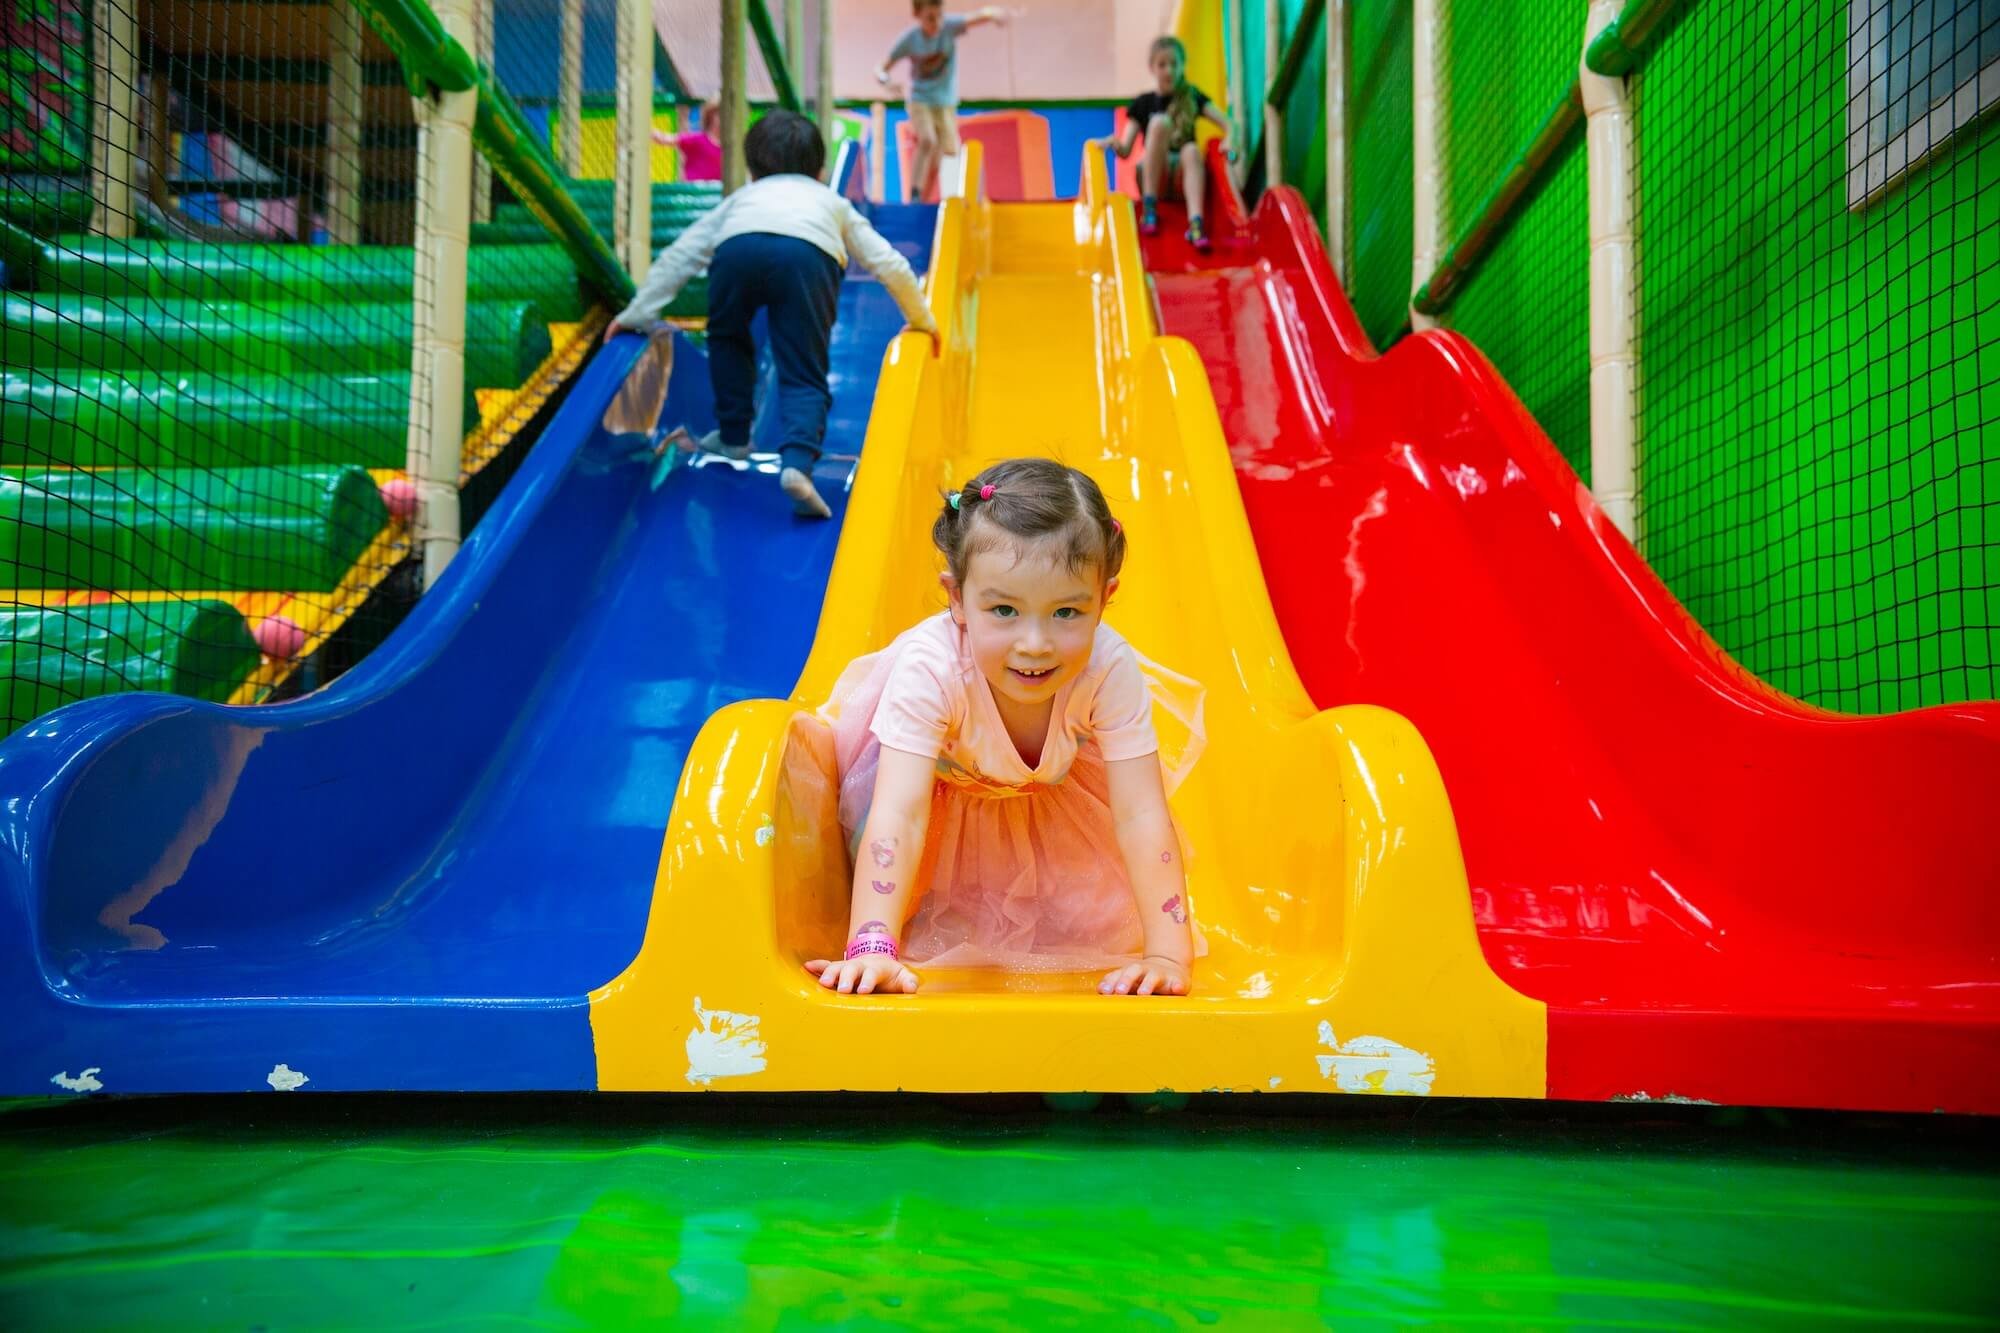 Children on slides - Westgate Sports & Leisure Centre.jpg